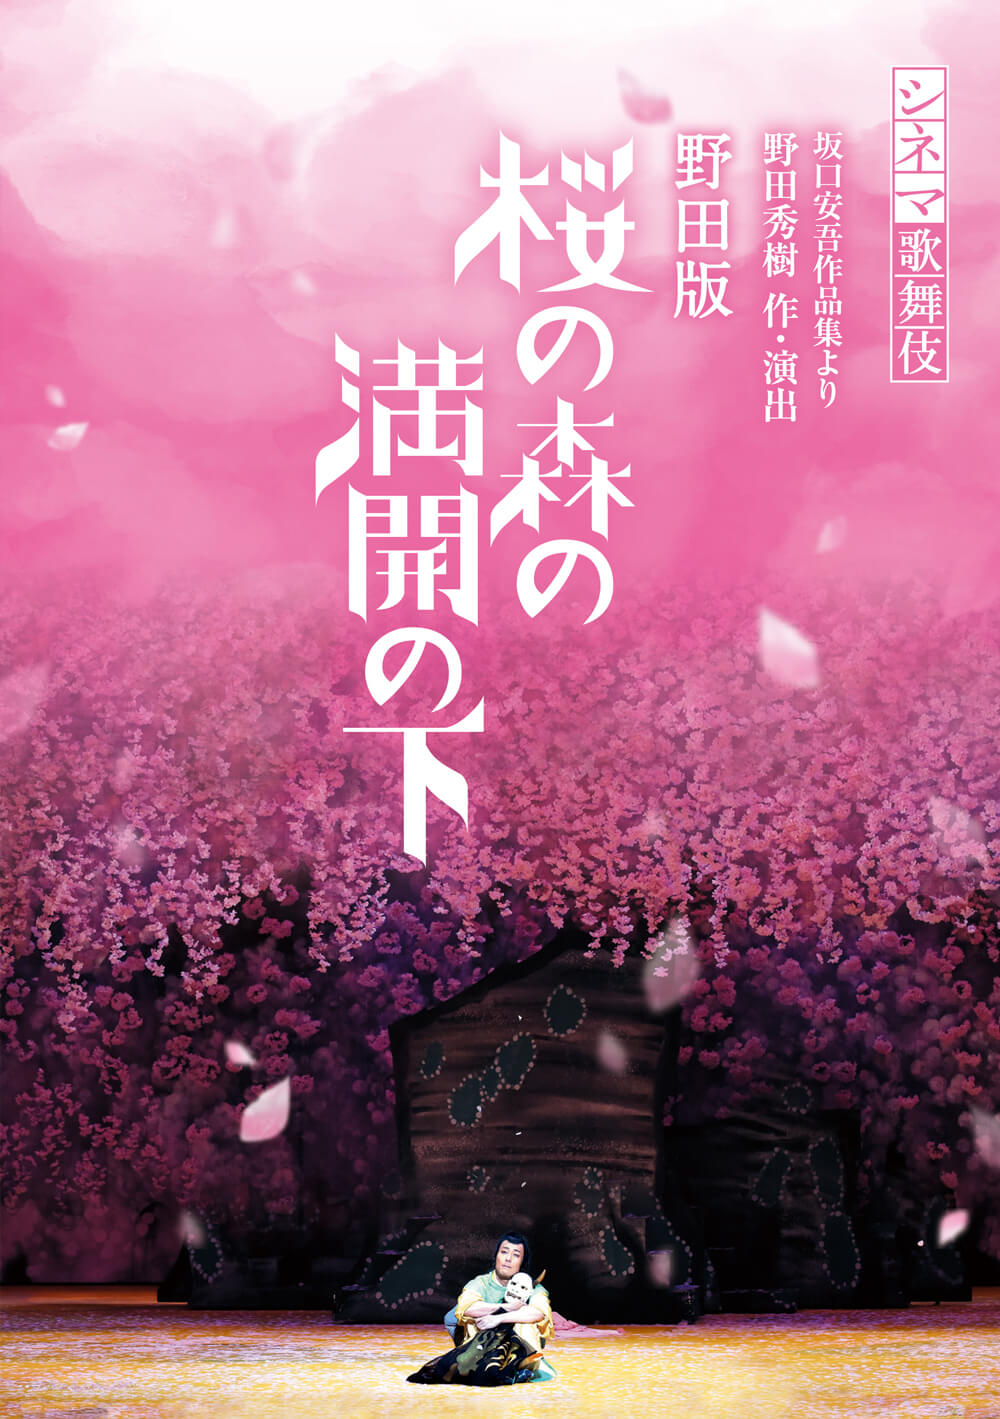 シネマ歌舞伎『野田版 桜の森の満開の下』ブルーレイ、DVD発売のお知らせ